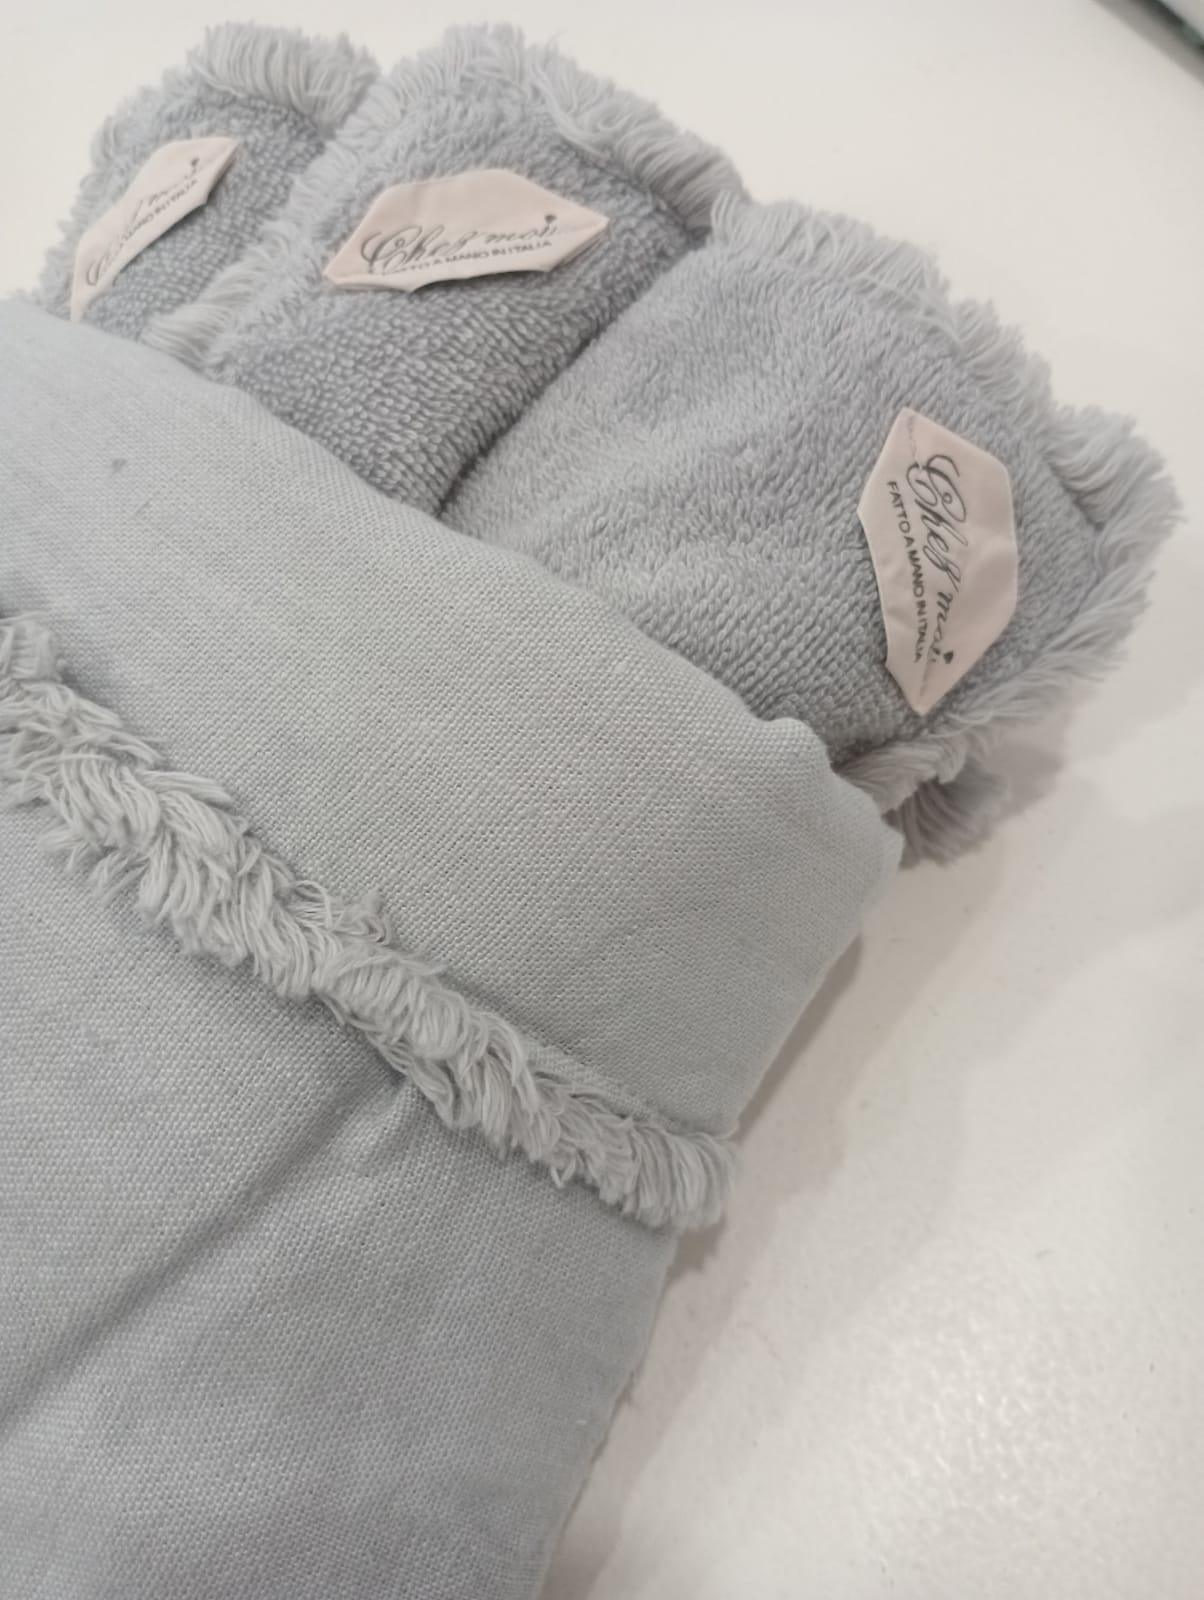 Lavette set da 3 asciugamani bagno con elegante sacchetto di lino, colore: Grigio Perla, 100% Made in Italy - Chez Moi - MARIKA DE PAOLA - HOME DECOR